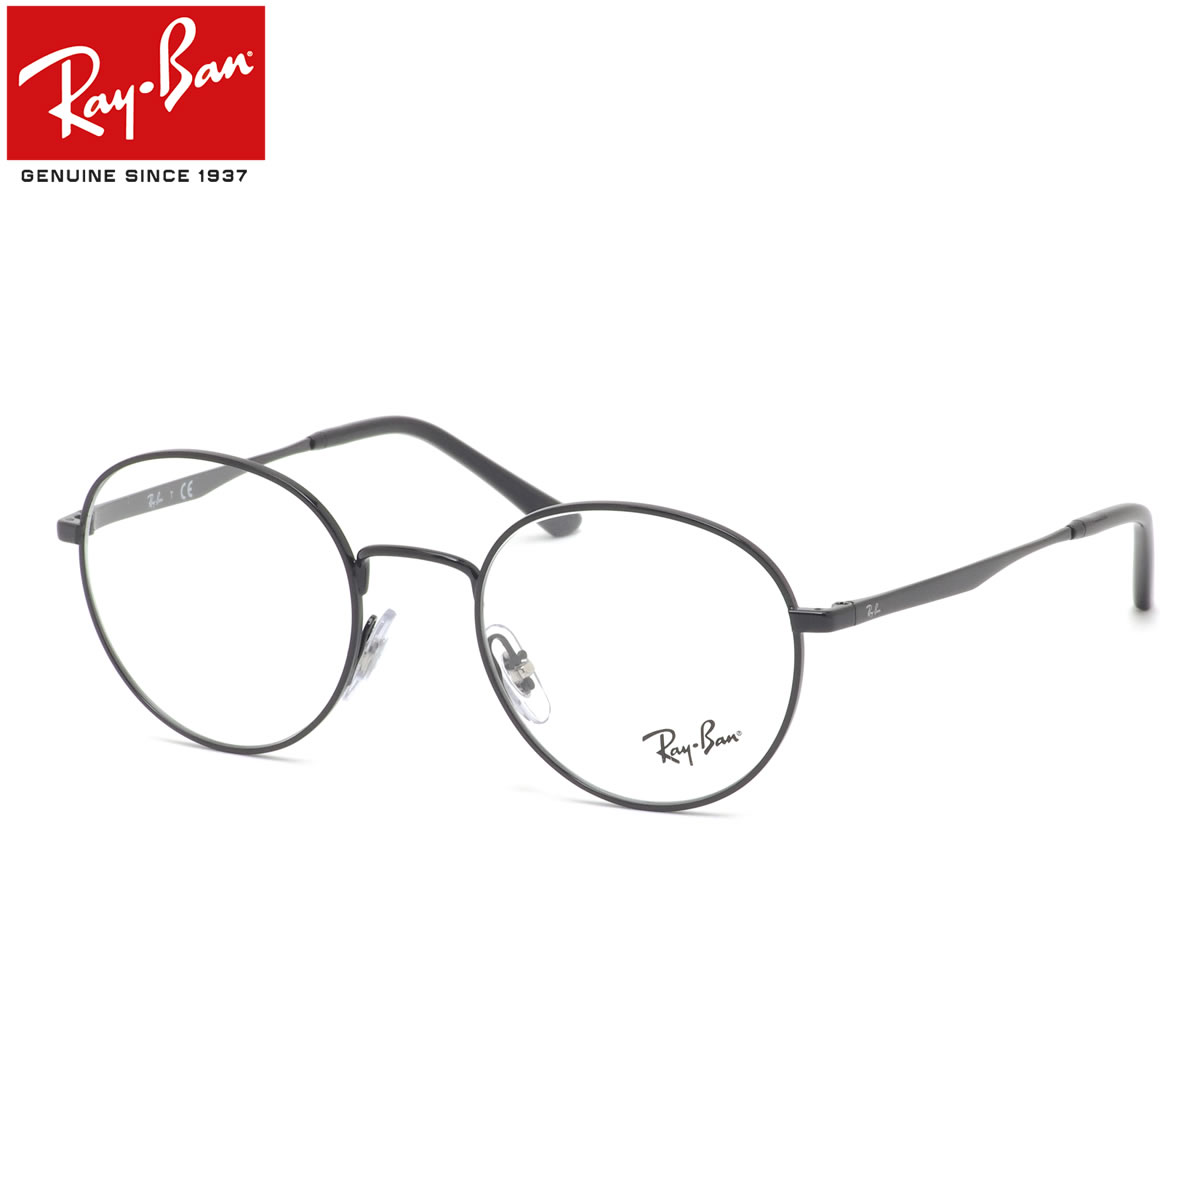 【レイバン純正レンズに新色登場】 Ray-Ban RX3681V 2509 50 メガネ レイバン純正レンズ対応 レイバン 丸メガネ メンズ レディース